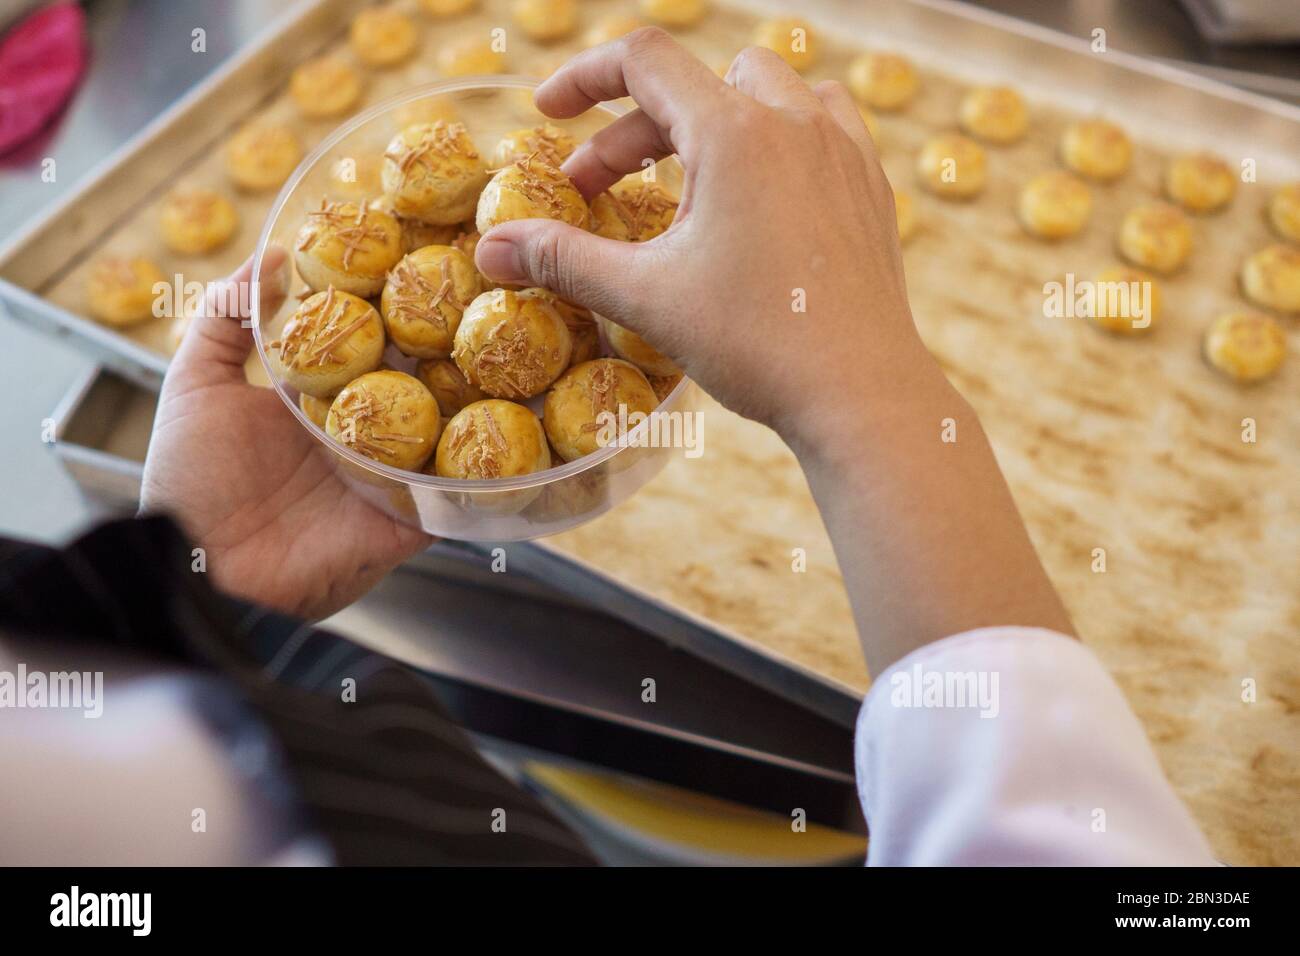 Ananas Torte frisch aus dem Ofen. Nastar Kuchen Stockfotografie - Alamy